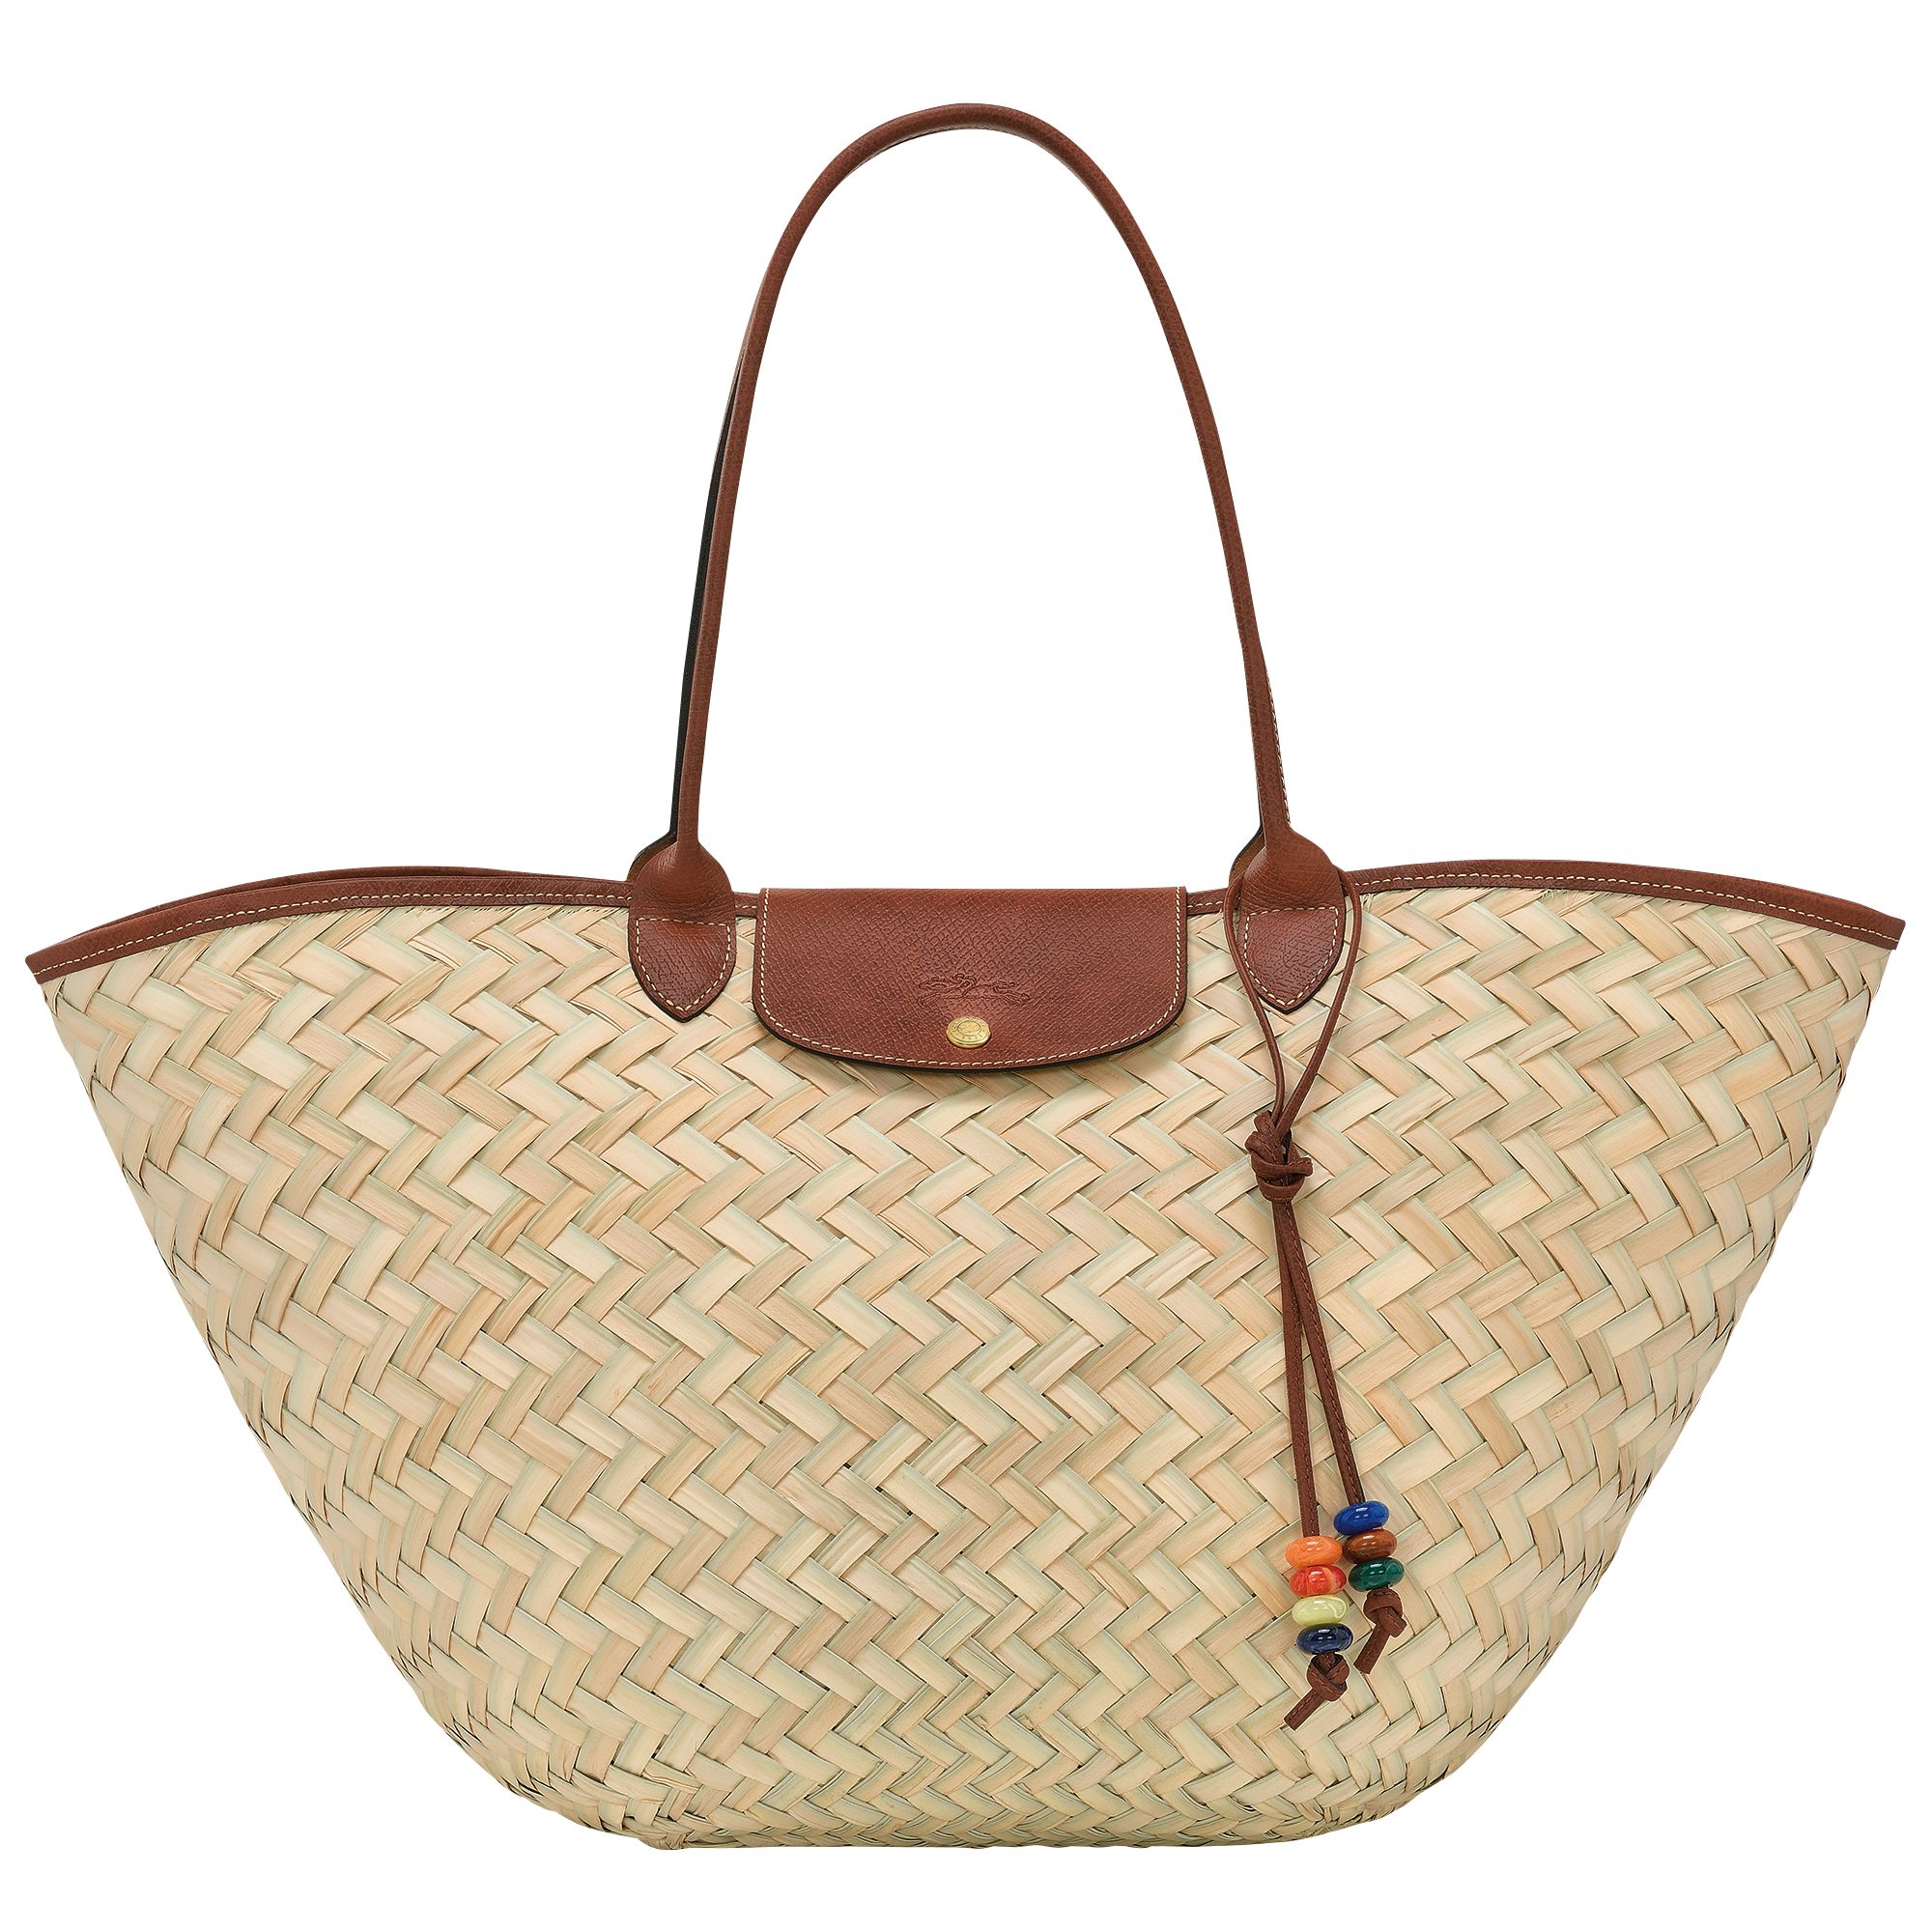 Le Panier Pliage XL Basket bag | Longchamp